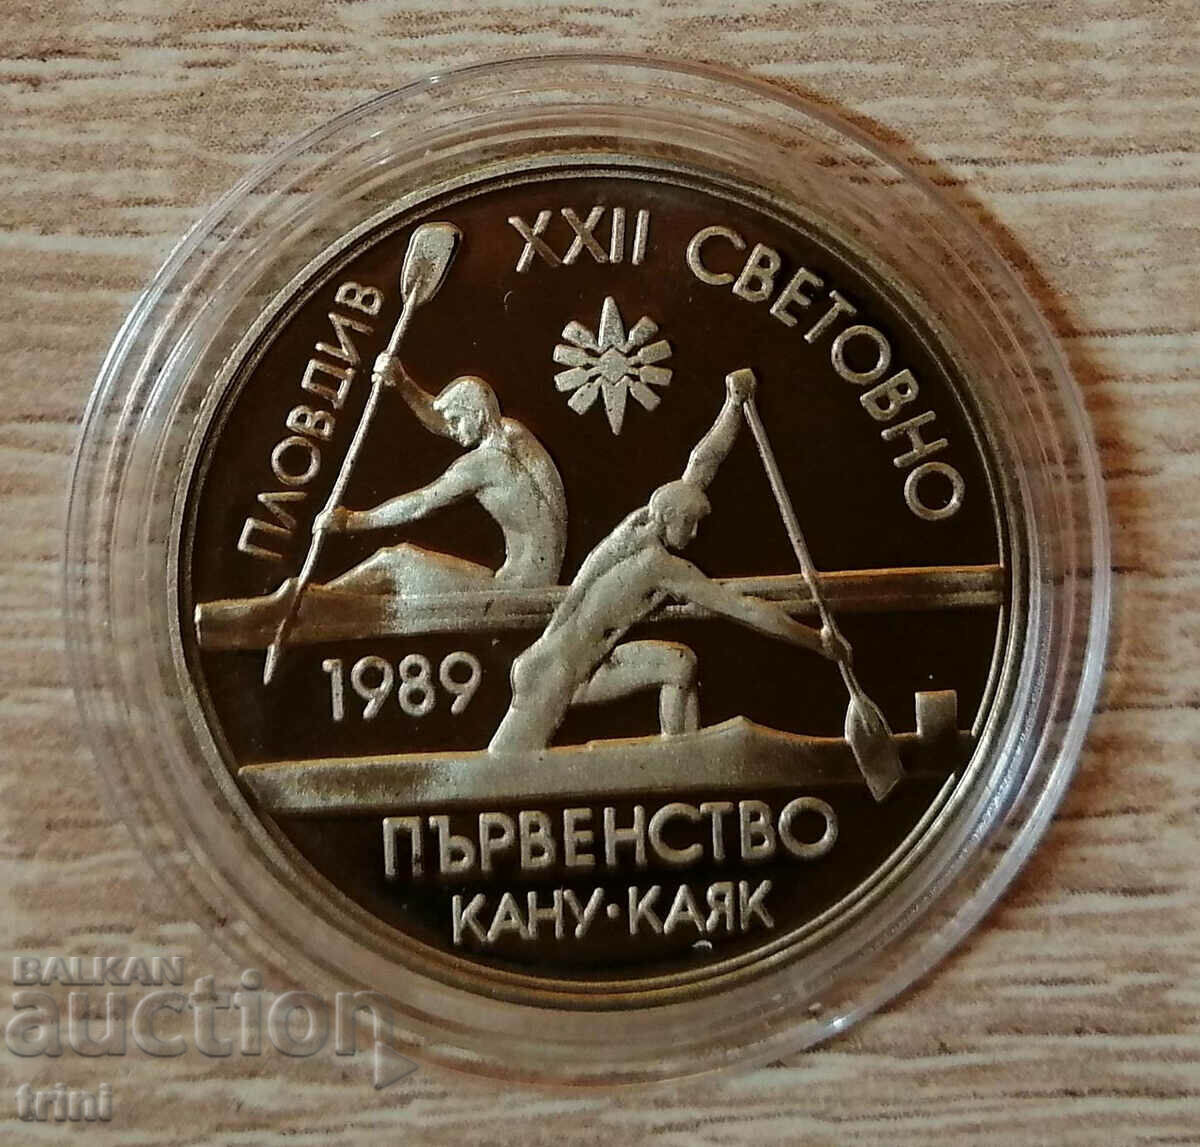 2 лева 1989 XXII световно първенство по кану-каяк, Пловдив